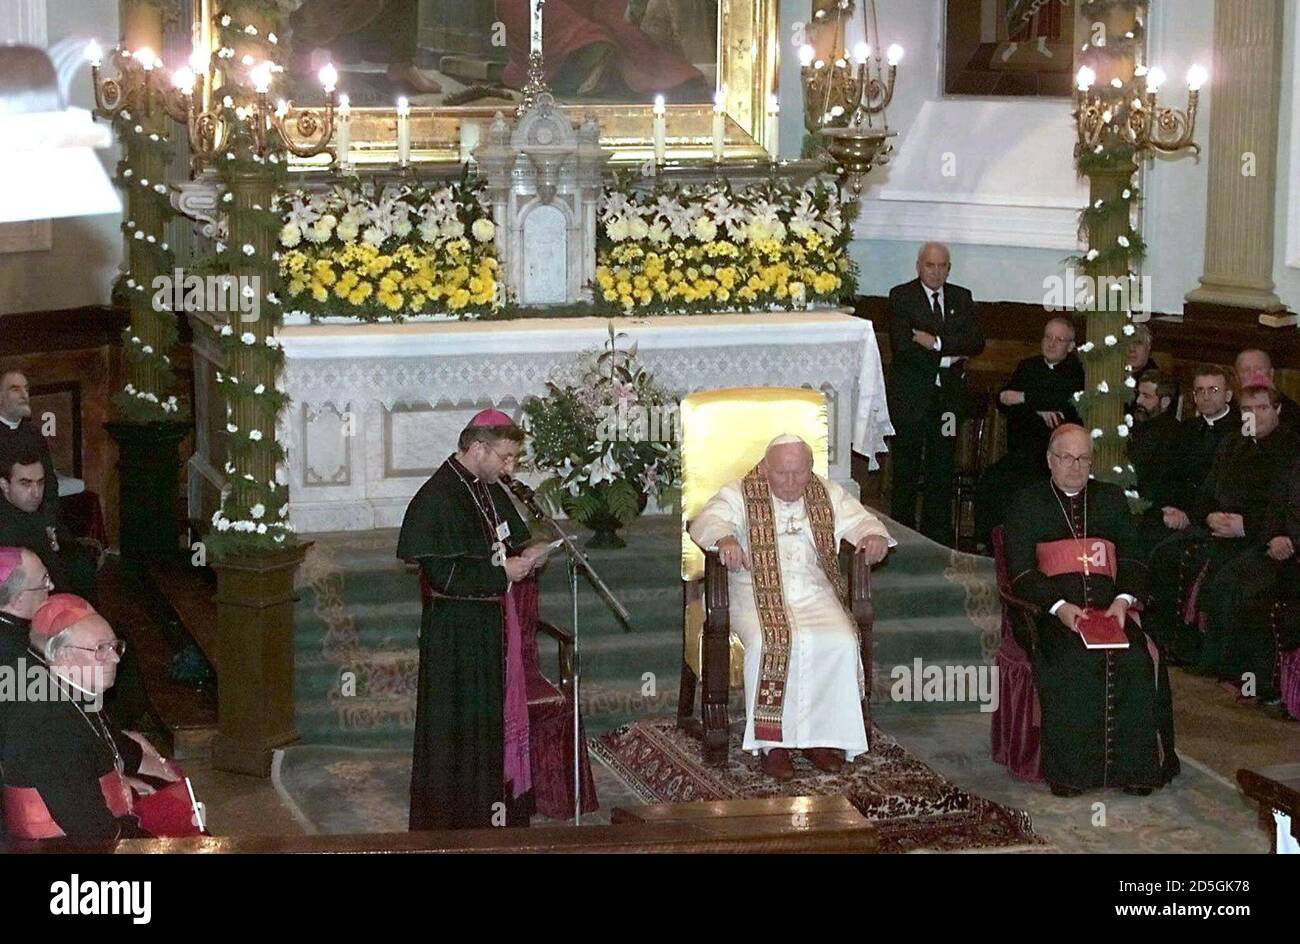 El Papa Juan Pablo II asiste a una misa en una iglesia católica en Tbilisi  el 9 de noviembre el segundo día de su visita de dos días a Georgia y fue